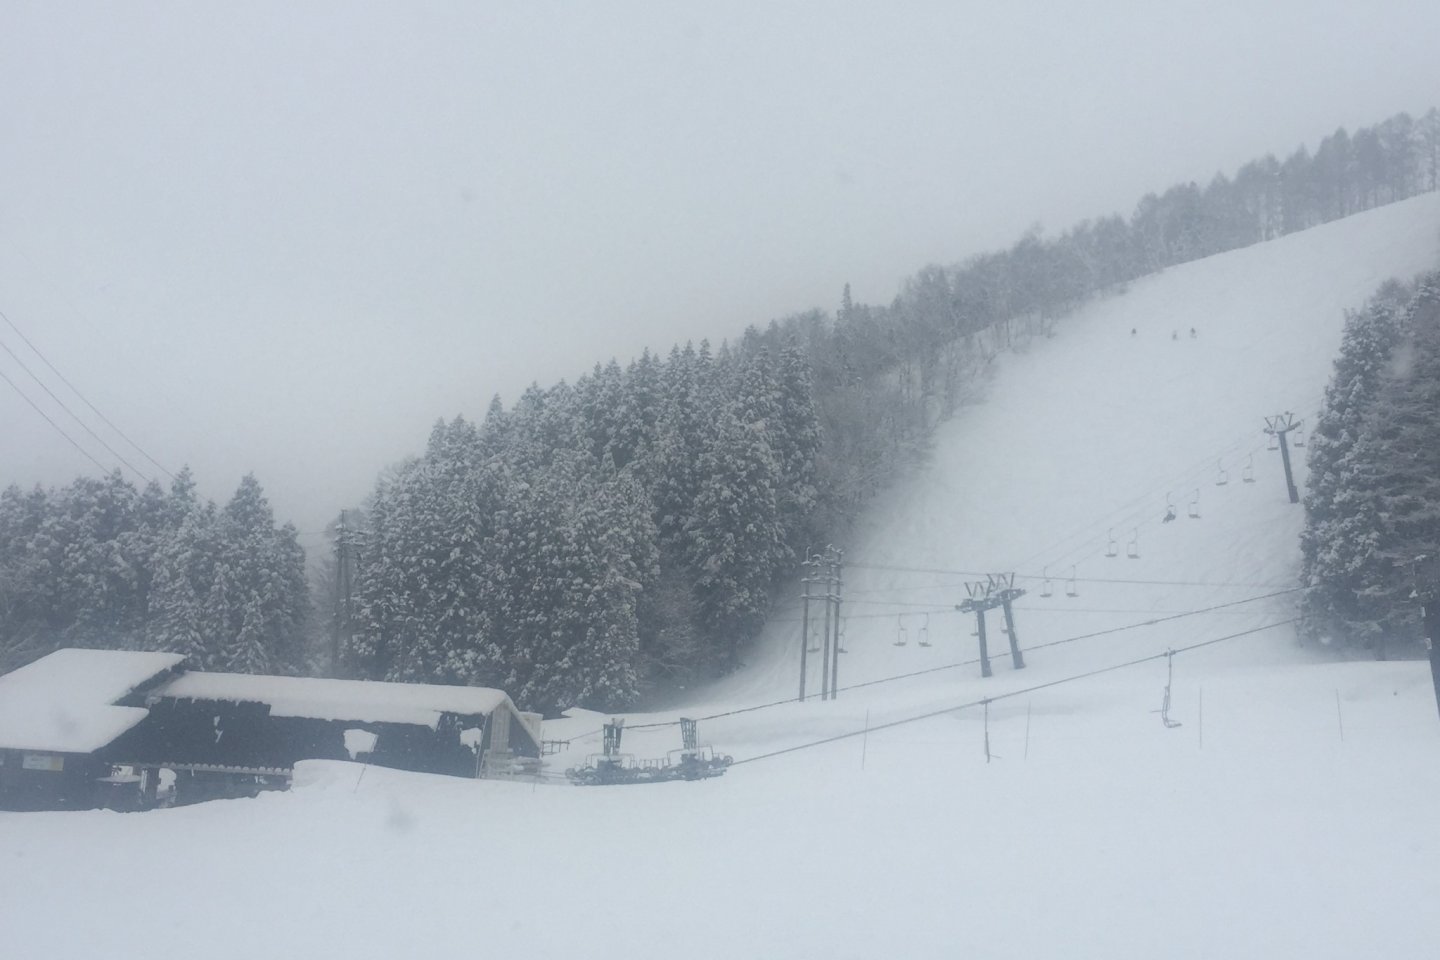 nozawa onsen ski town มาแล้วรับลองว่าจะอยากสกี